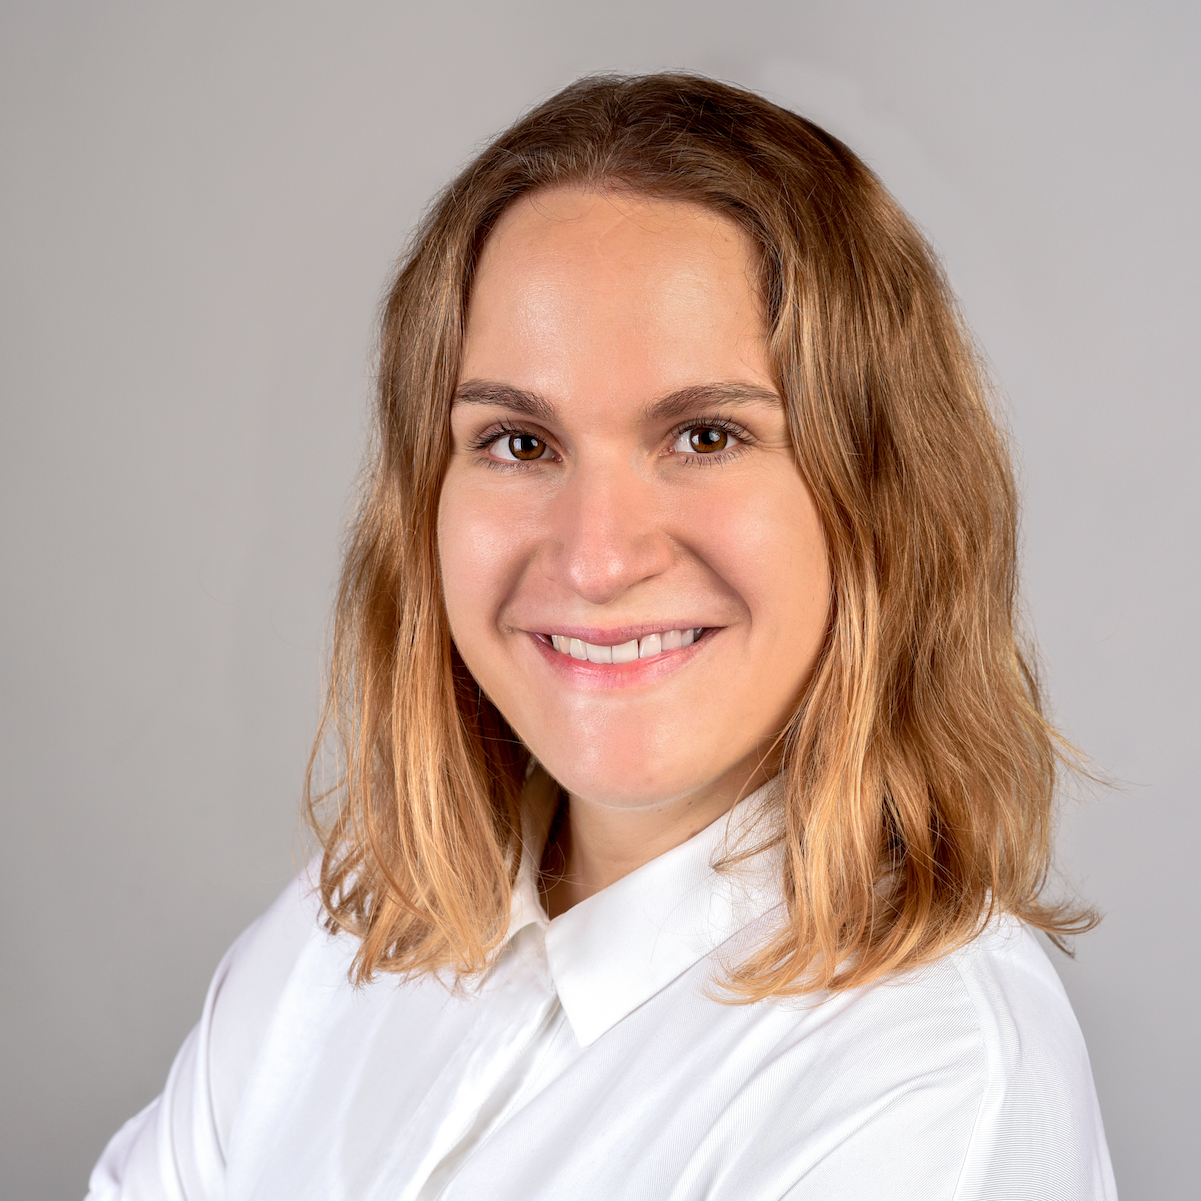 Role Model in Tech – Die neue Karriere mit Programmieren von Noemi Frischknecht